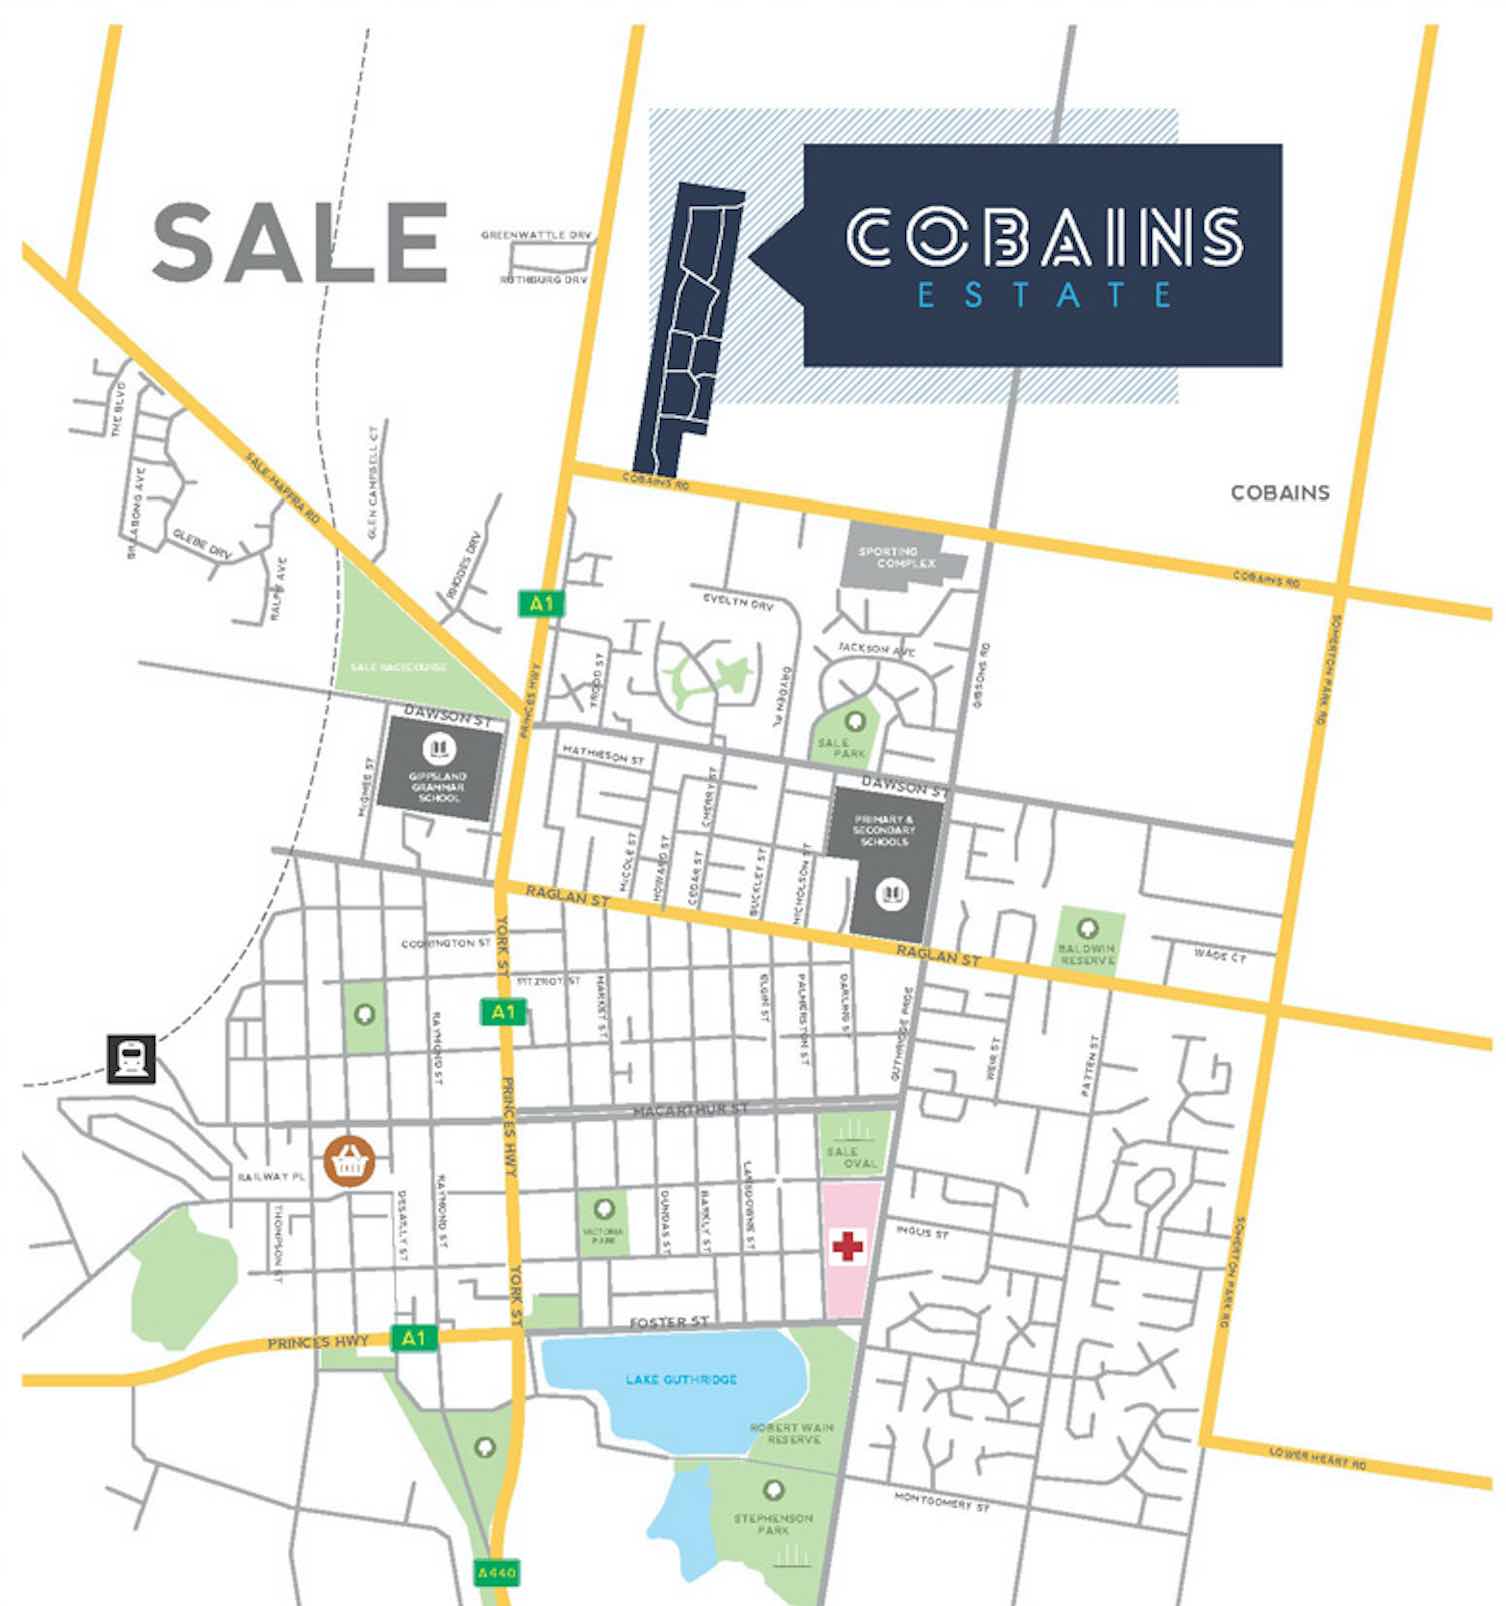 Cobains Estate - Sale Location map